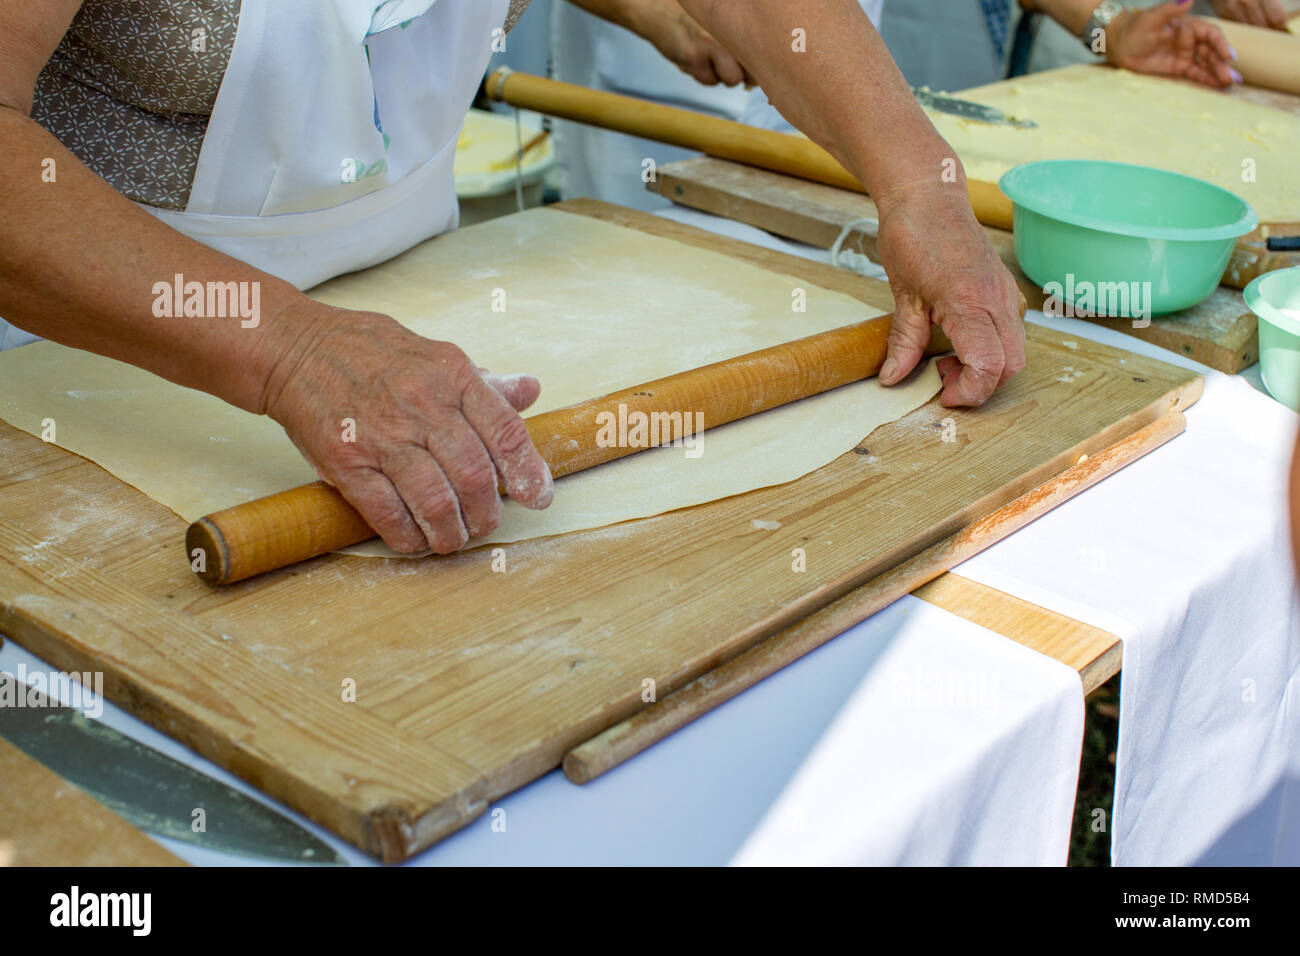 Vieilles mains ridées d'une femme âgée le déploiement de pâte avec un rouleau à pâtisserie sur une planche à découper en bois. Concept - Avantages de la cuisson à la maison, je vie active Banque D'Images